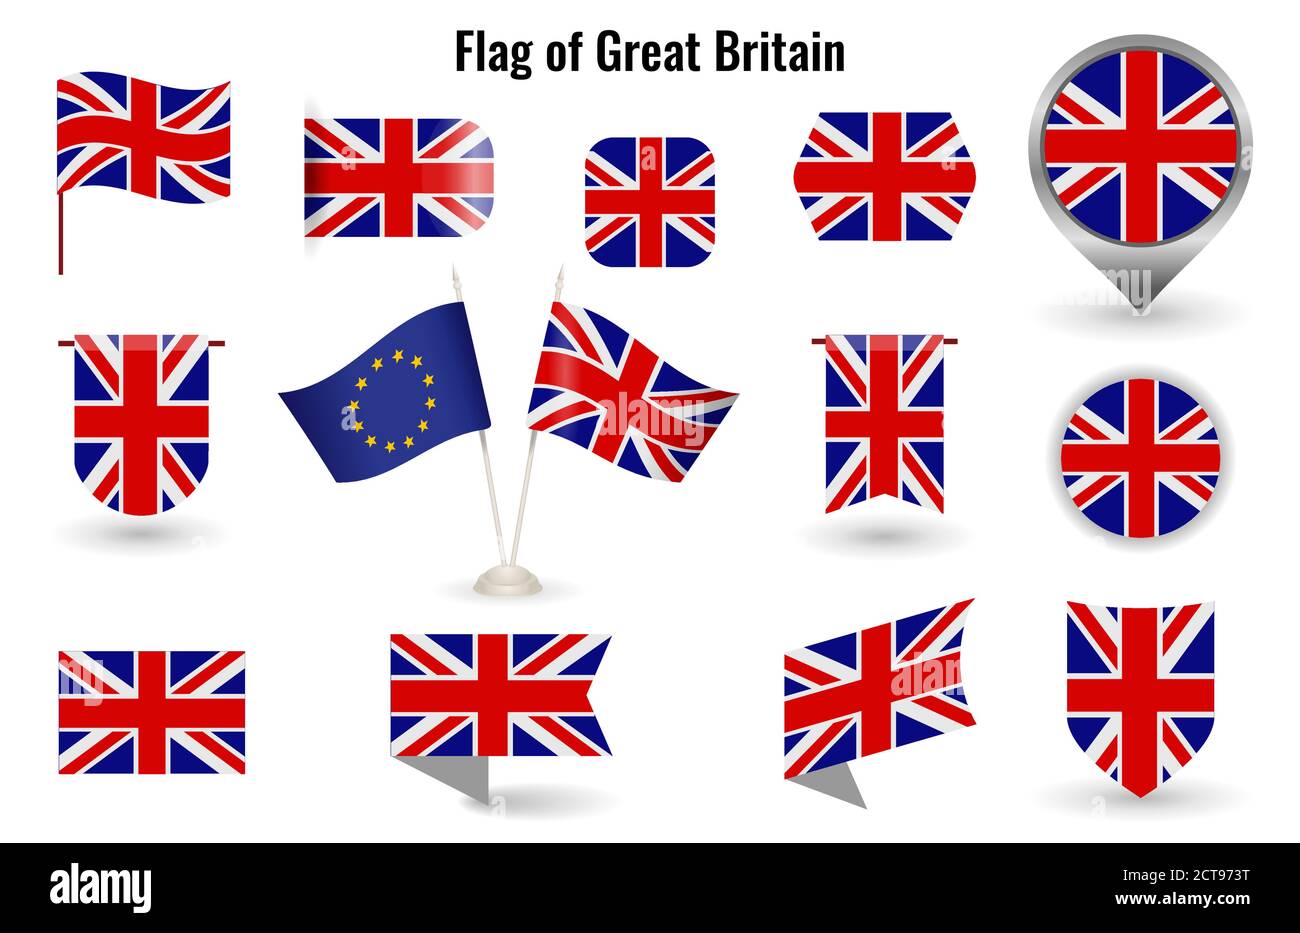 Die Flagge von Großbritannien. Großer Satz von Symbolen und Symbolen Vereinigtes Königreich. Quadratische und runde Flagge Englands. Sammlung von verschiedenen Flaggen der horizontalen und vertikalen. Stock Vektor